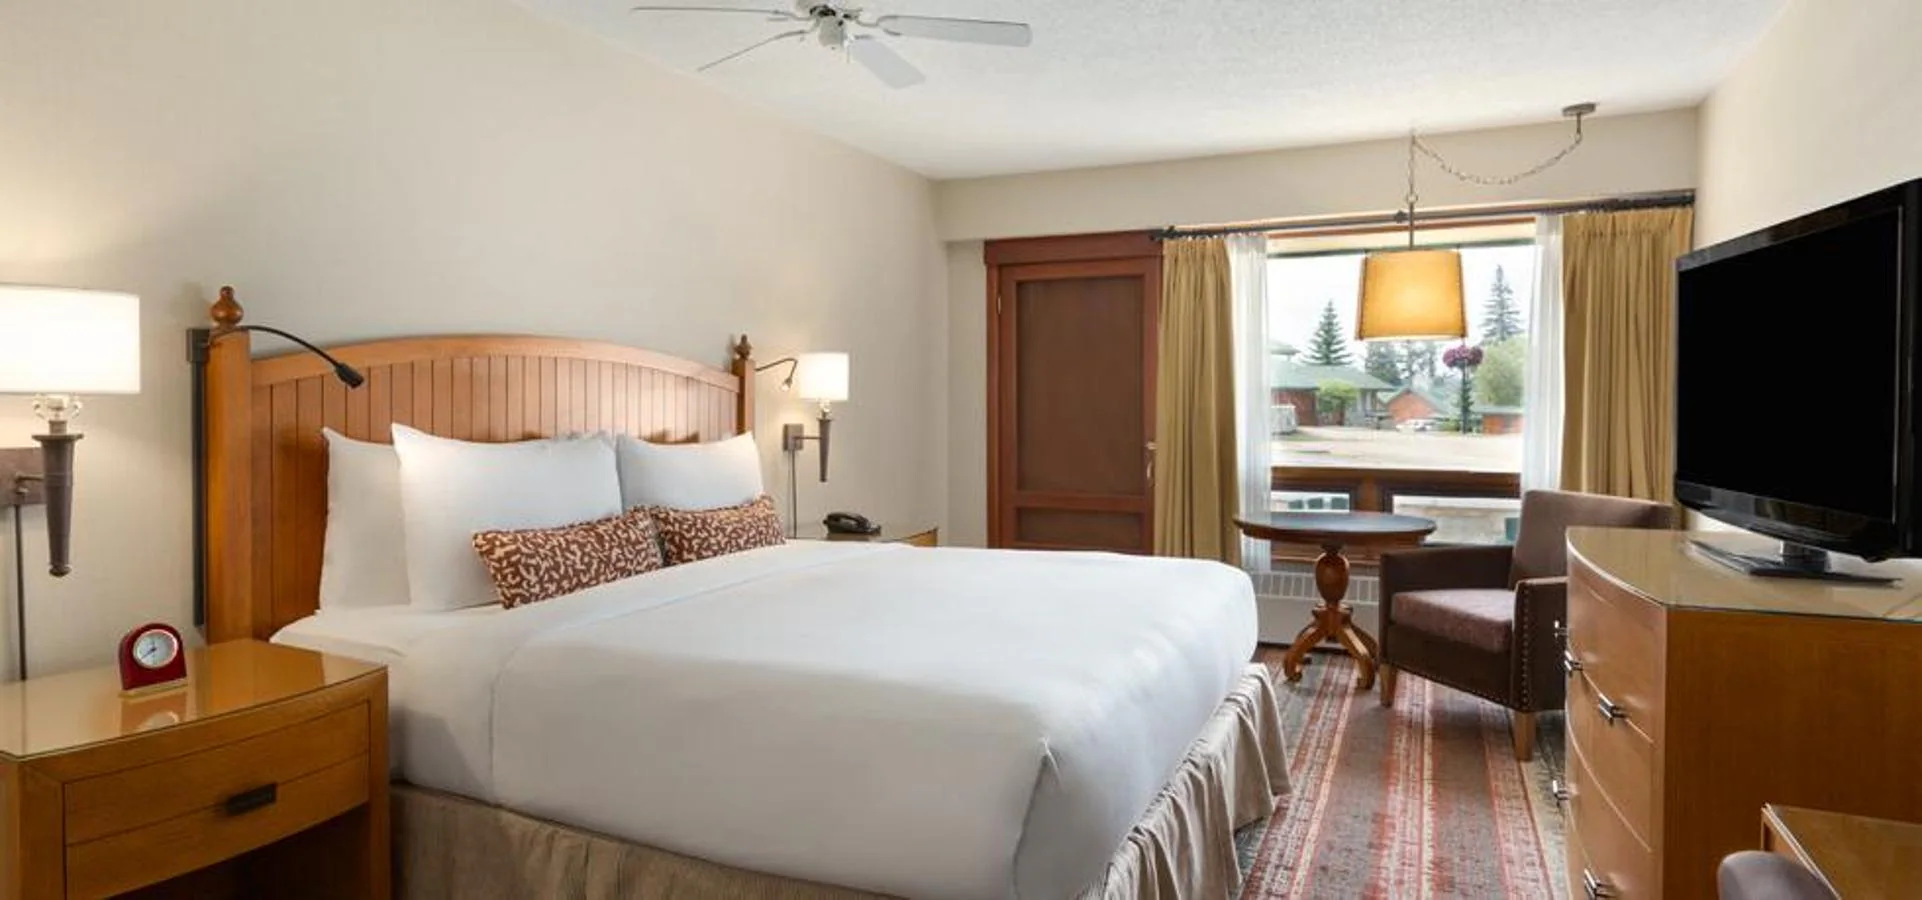 Así es una habitación del resort. Cada una de las habitaciones cuenta con lujosas camas y vistas impresionantes